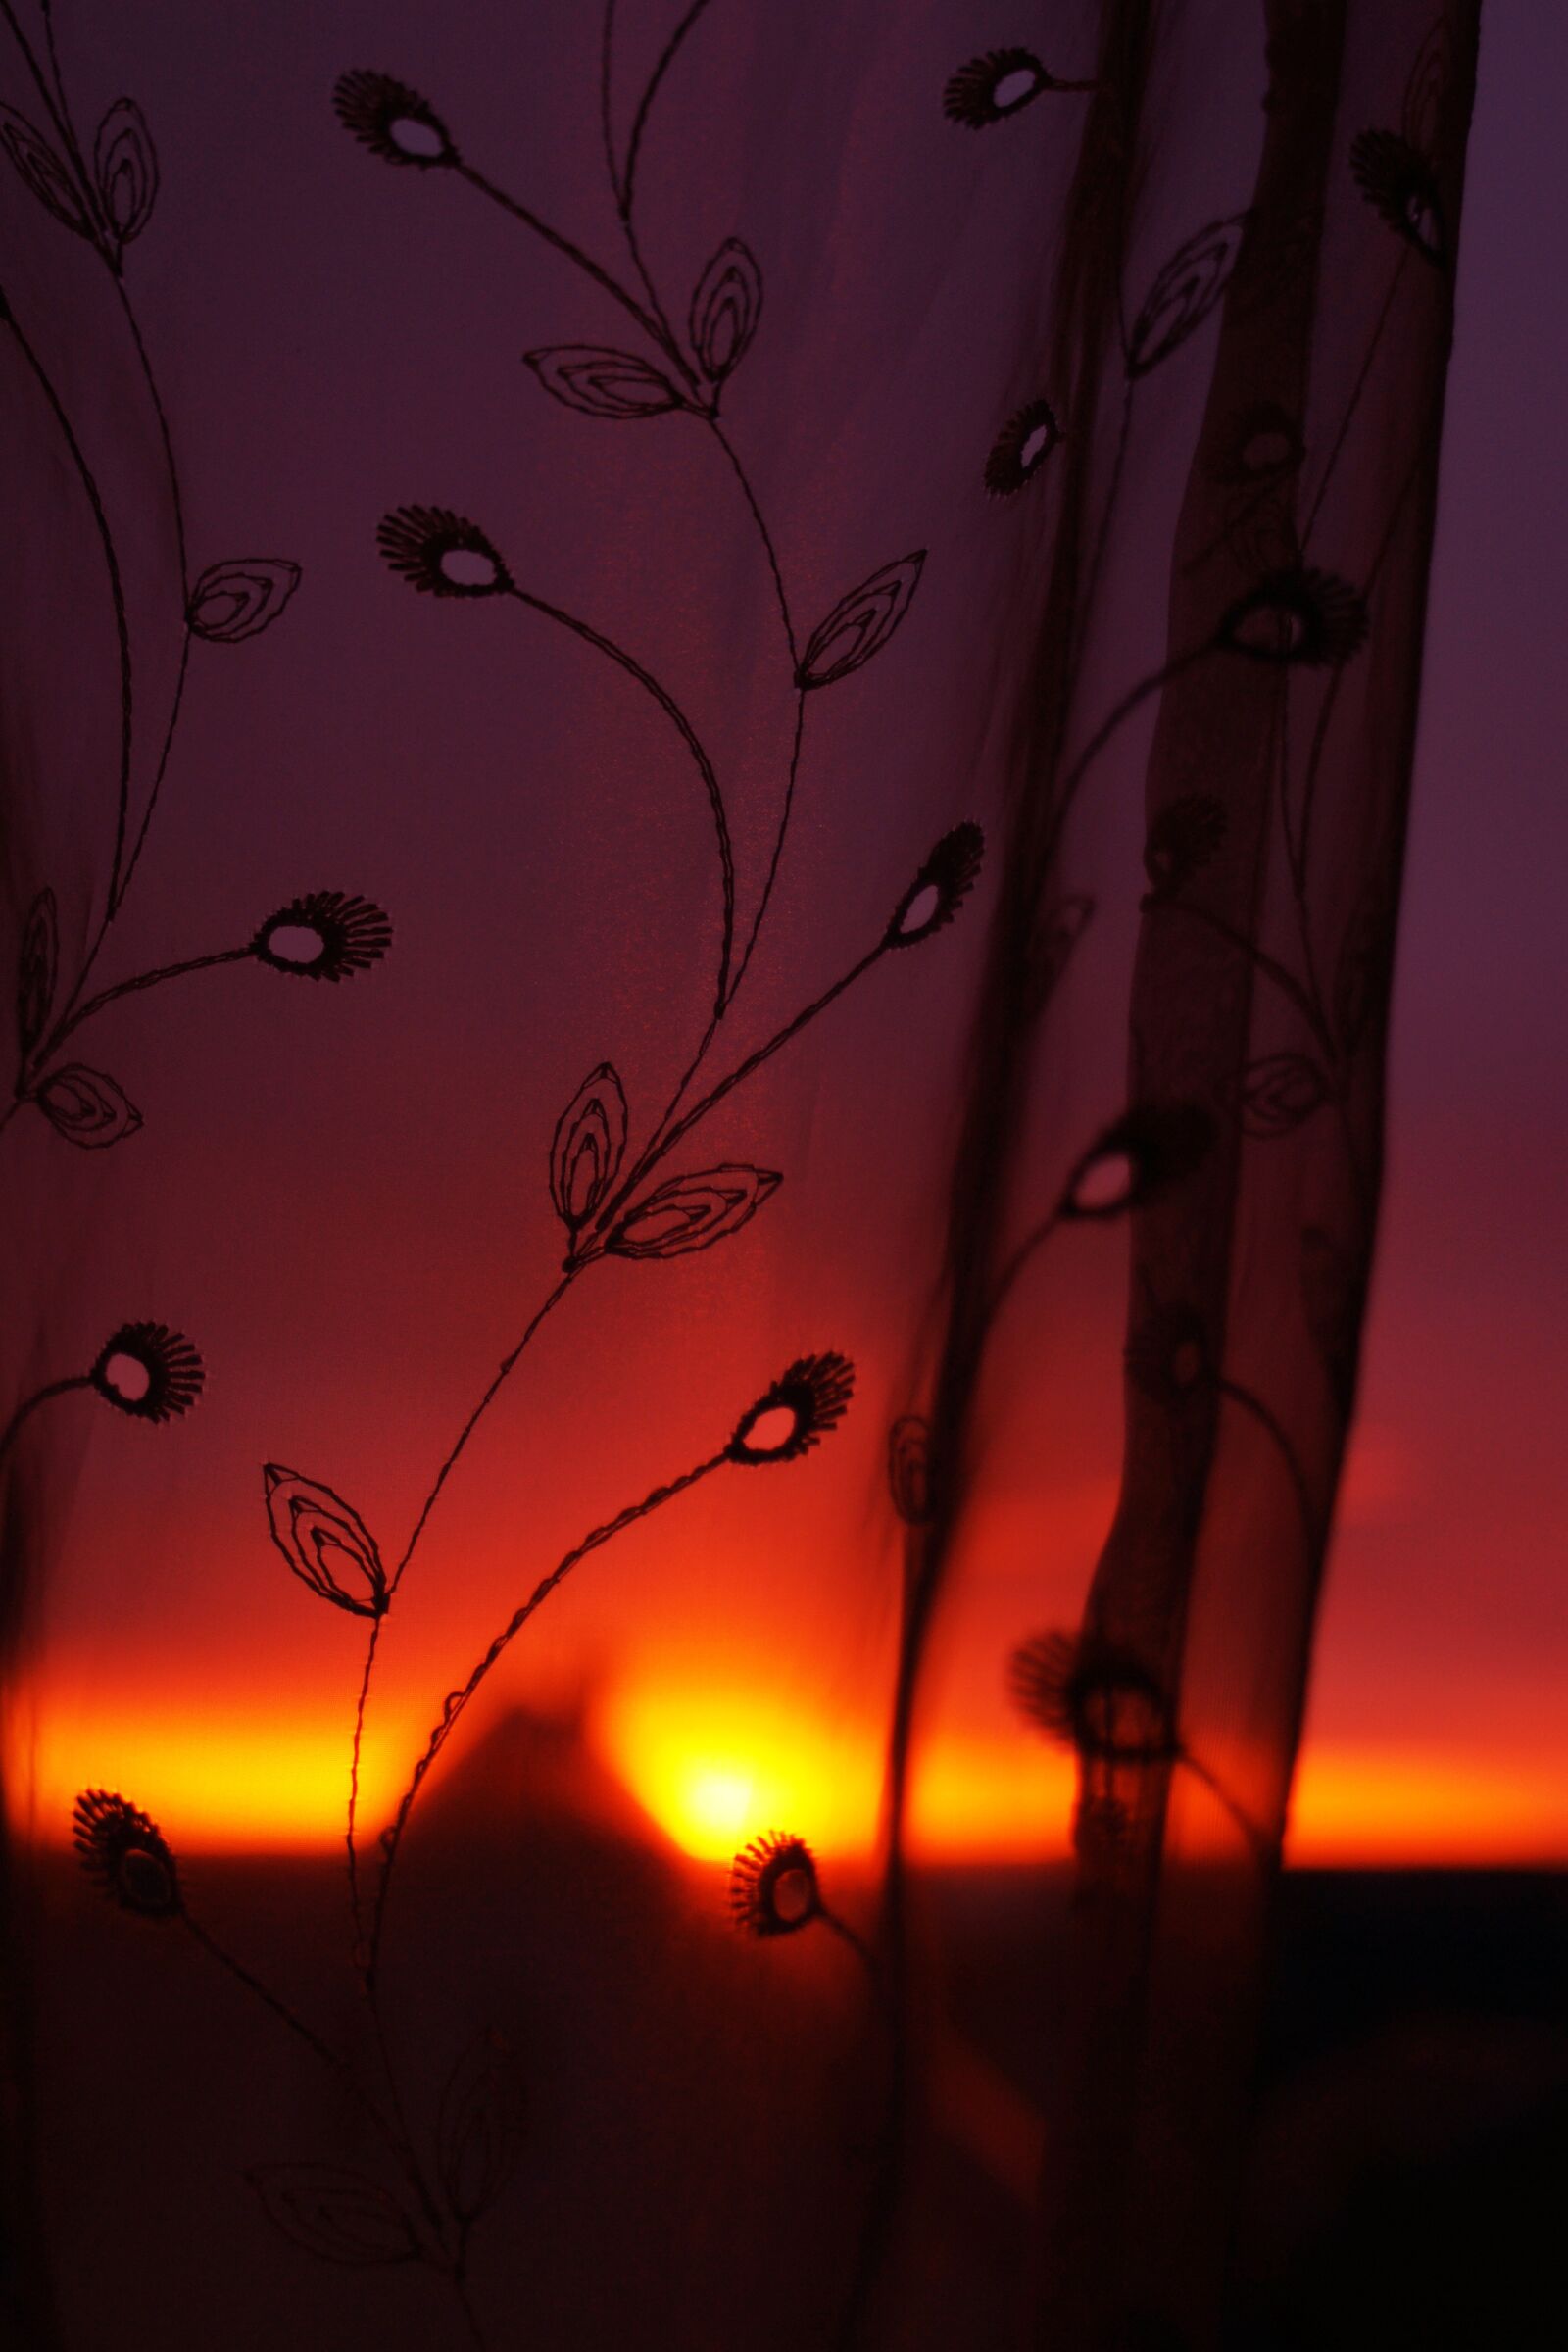 Sony Alpha DSLR-A700 sample photo. Sunset, sky, nature photography